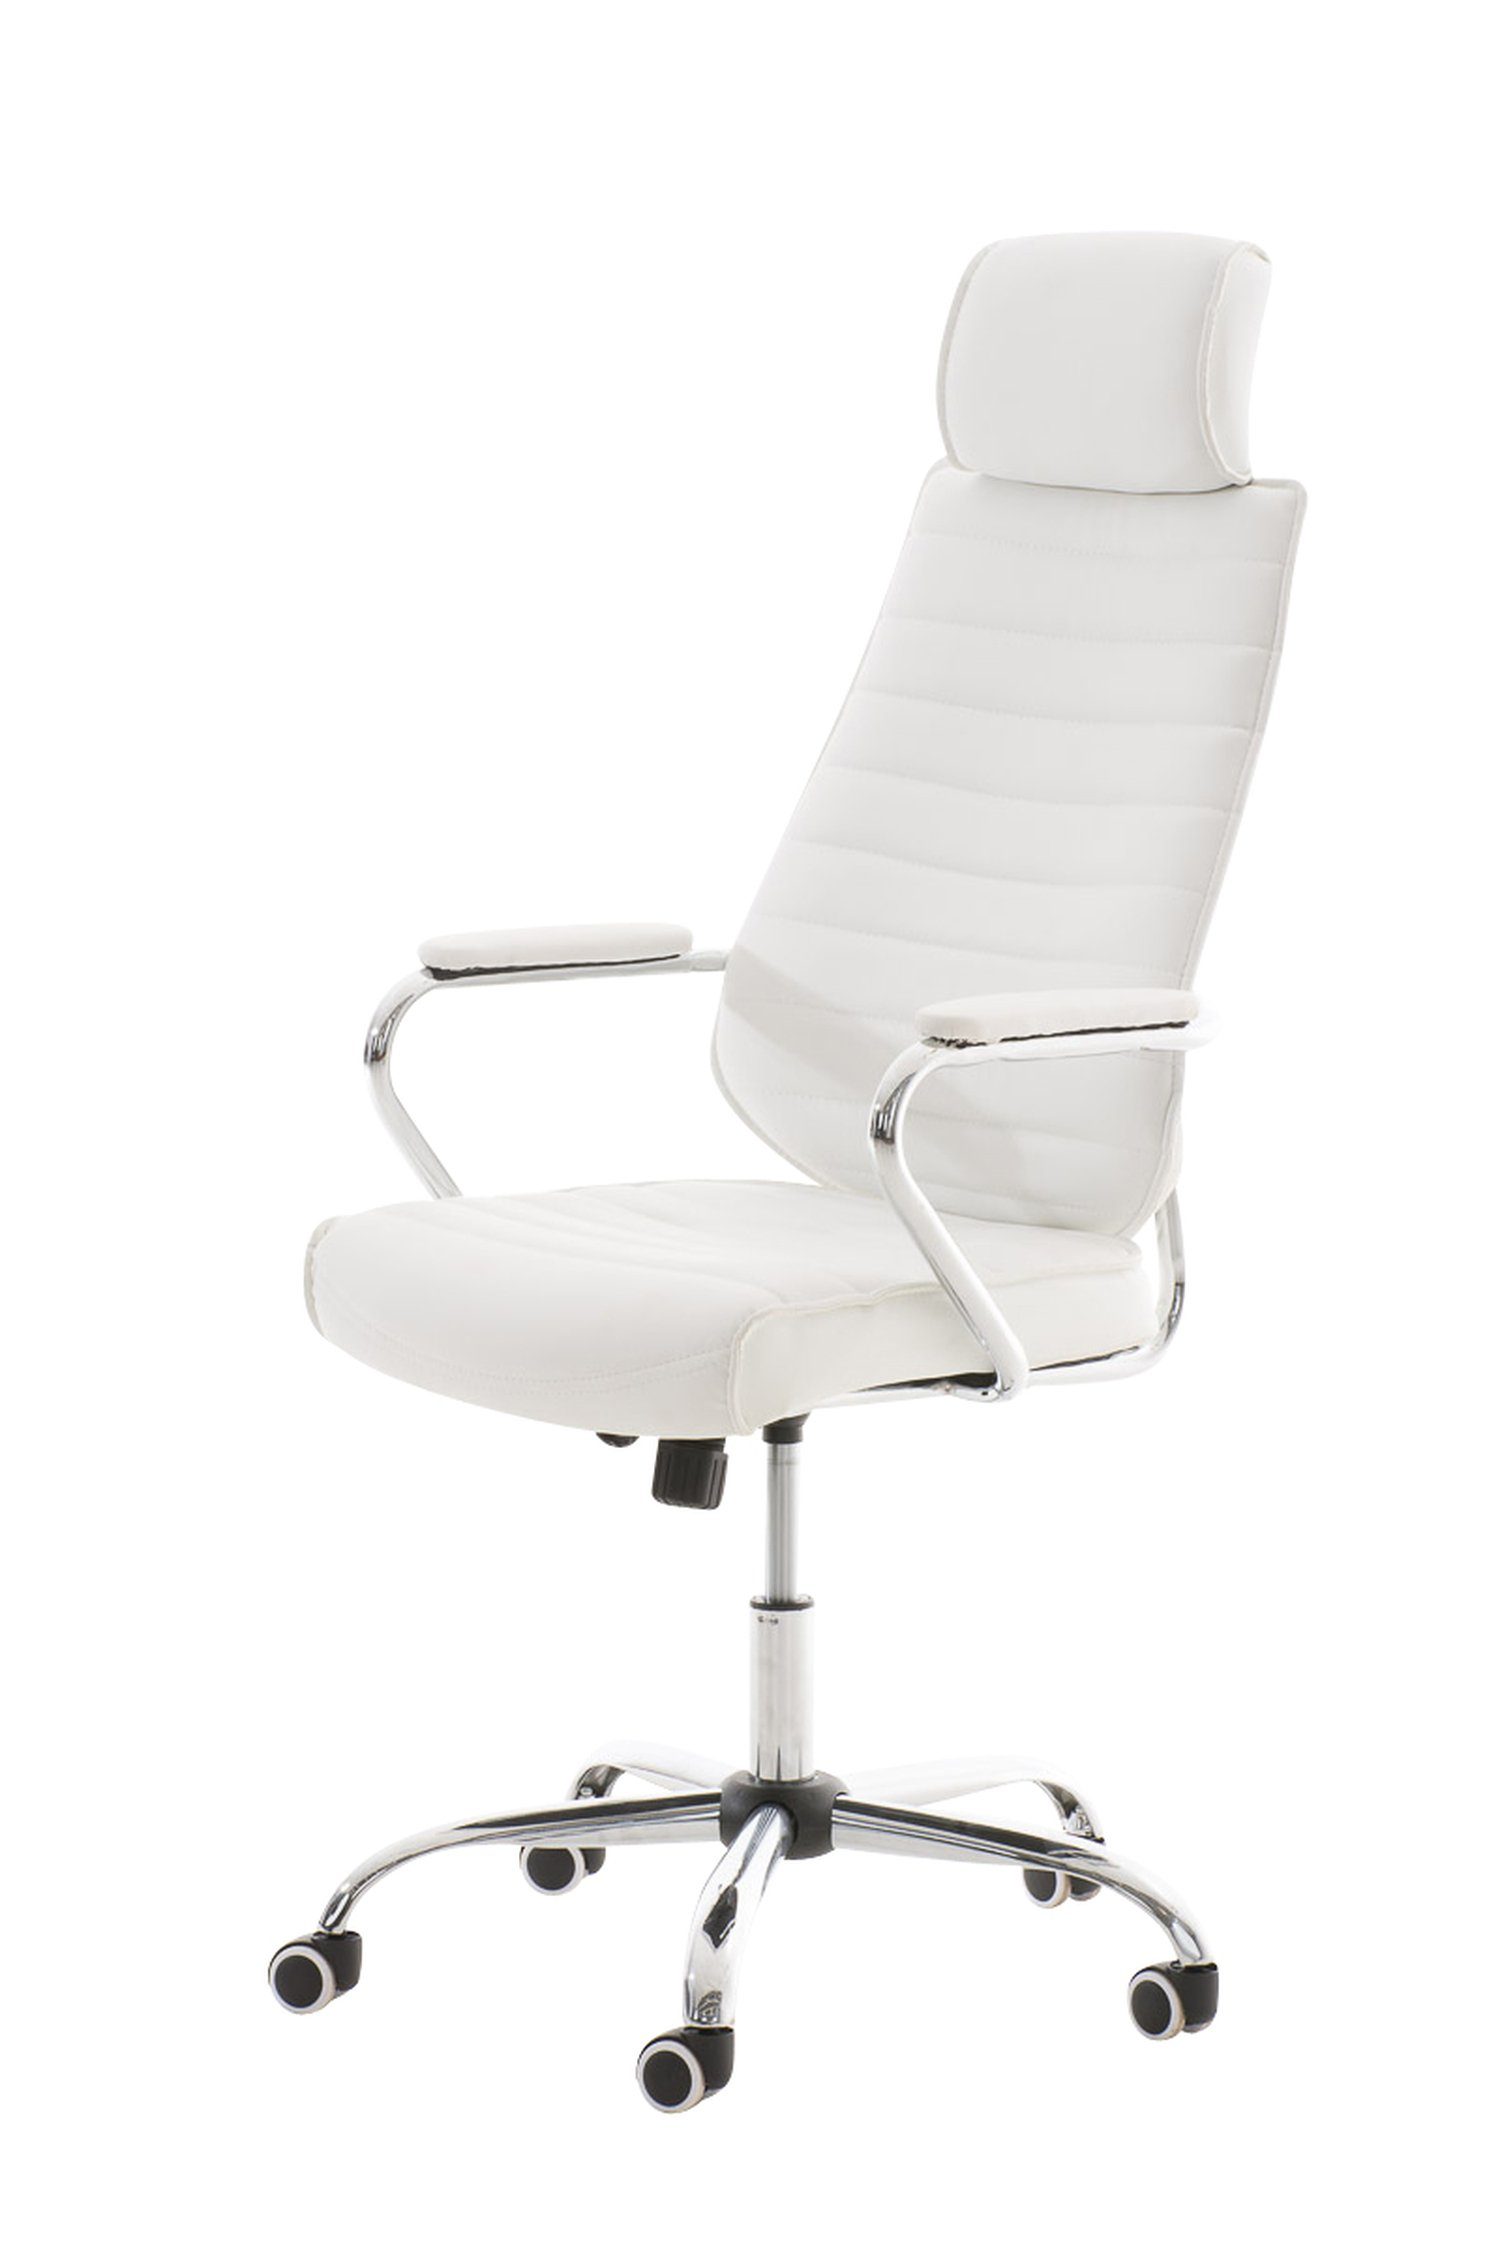 TPFLiving Bürostuhl Rocket V2 mit bequemer Rückenlehne - höhenverstellbar und 360° drehbar (Schreibtischstuhl, Drehstuhl, Chefsessel, Bürostuhl XXL), Gestell: Metall chrom - Sitz: Kunstleder weiß | Drehstühle